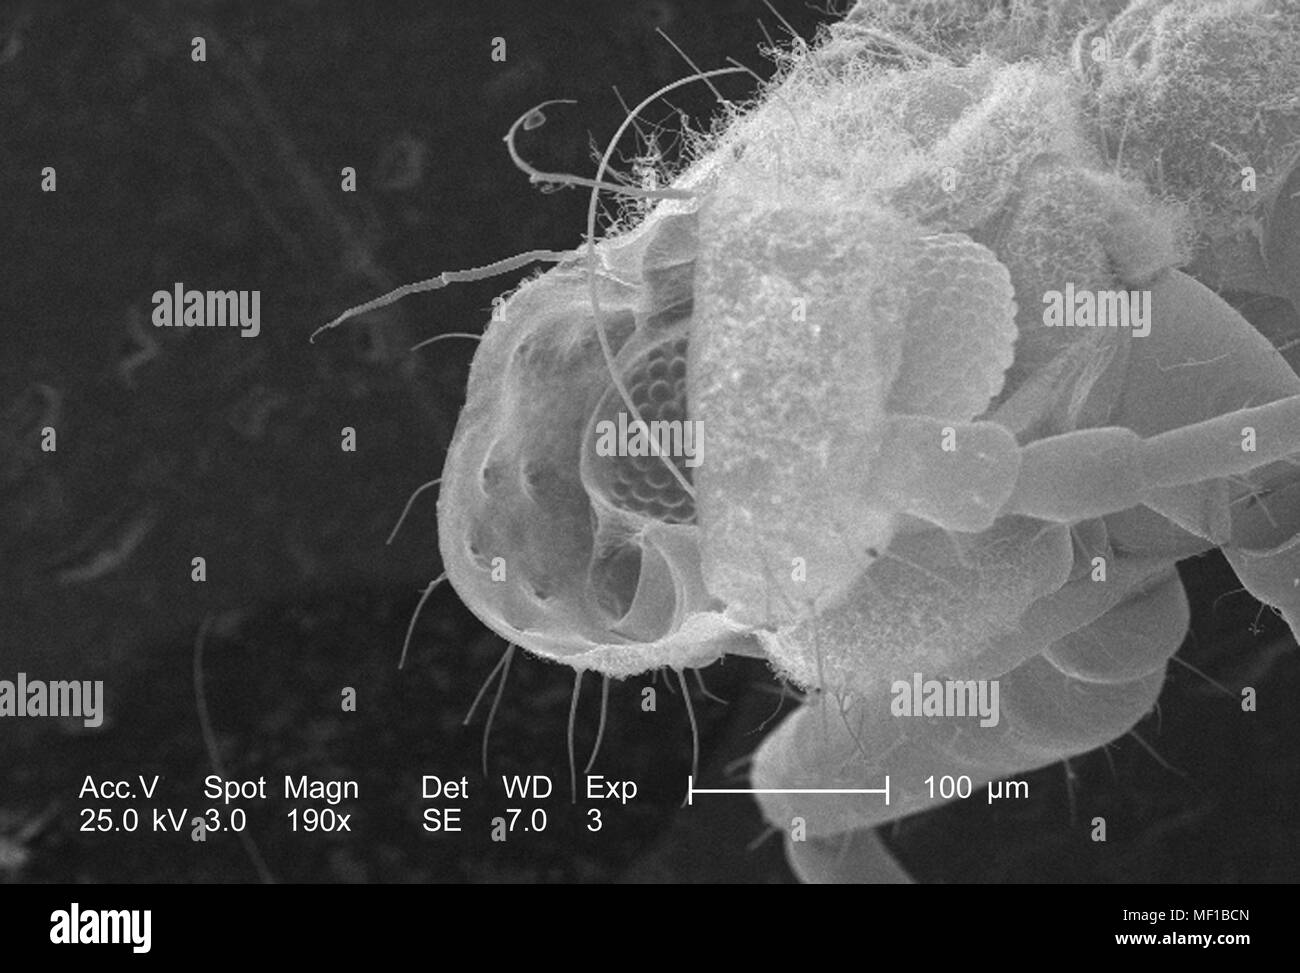 Piccolo insetto non identificato presente su dragonfly exoskeletal superficie, ha rivelato nel 190x di scansione ingrandita al microscopio elettronico (SEM) immagine, 2005. Immagine cortesia di centri per il controllo delle malattie (CDC) / Janice Haney Carr, Connie fiori. () Foto Stock